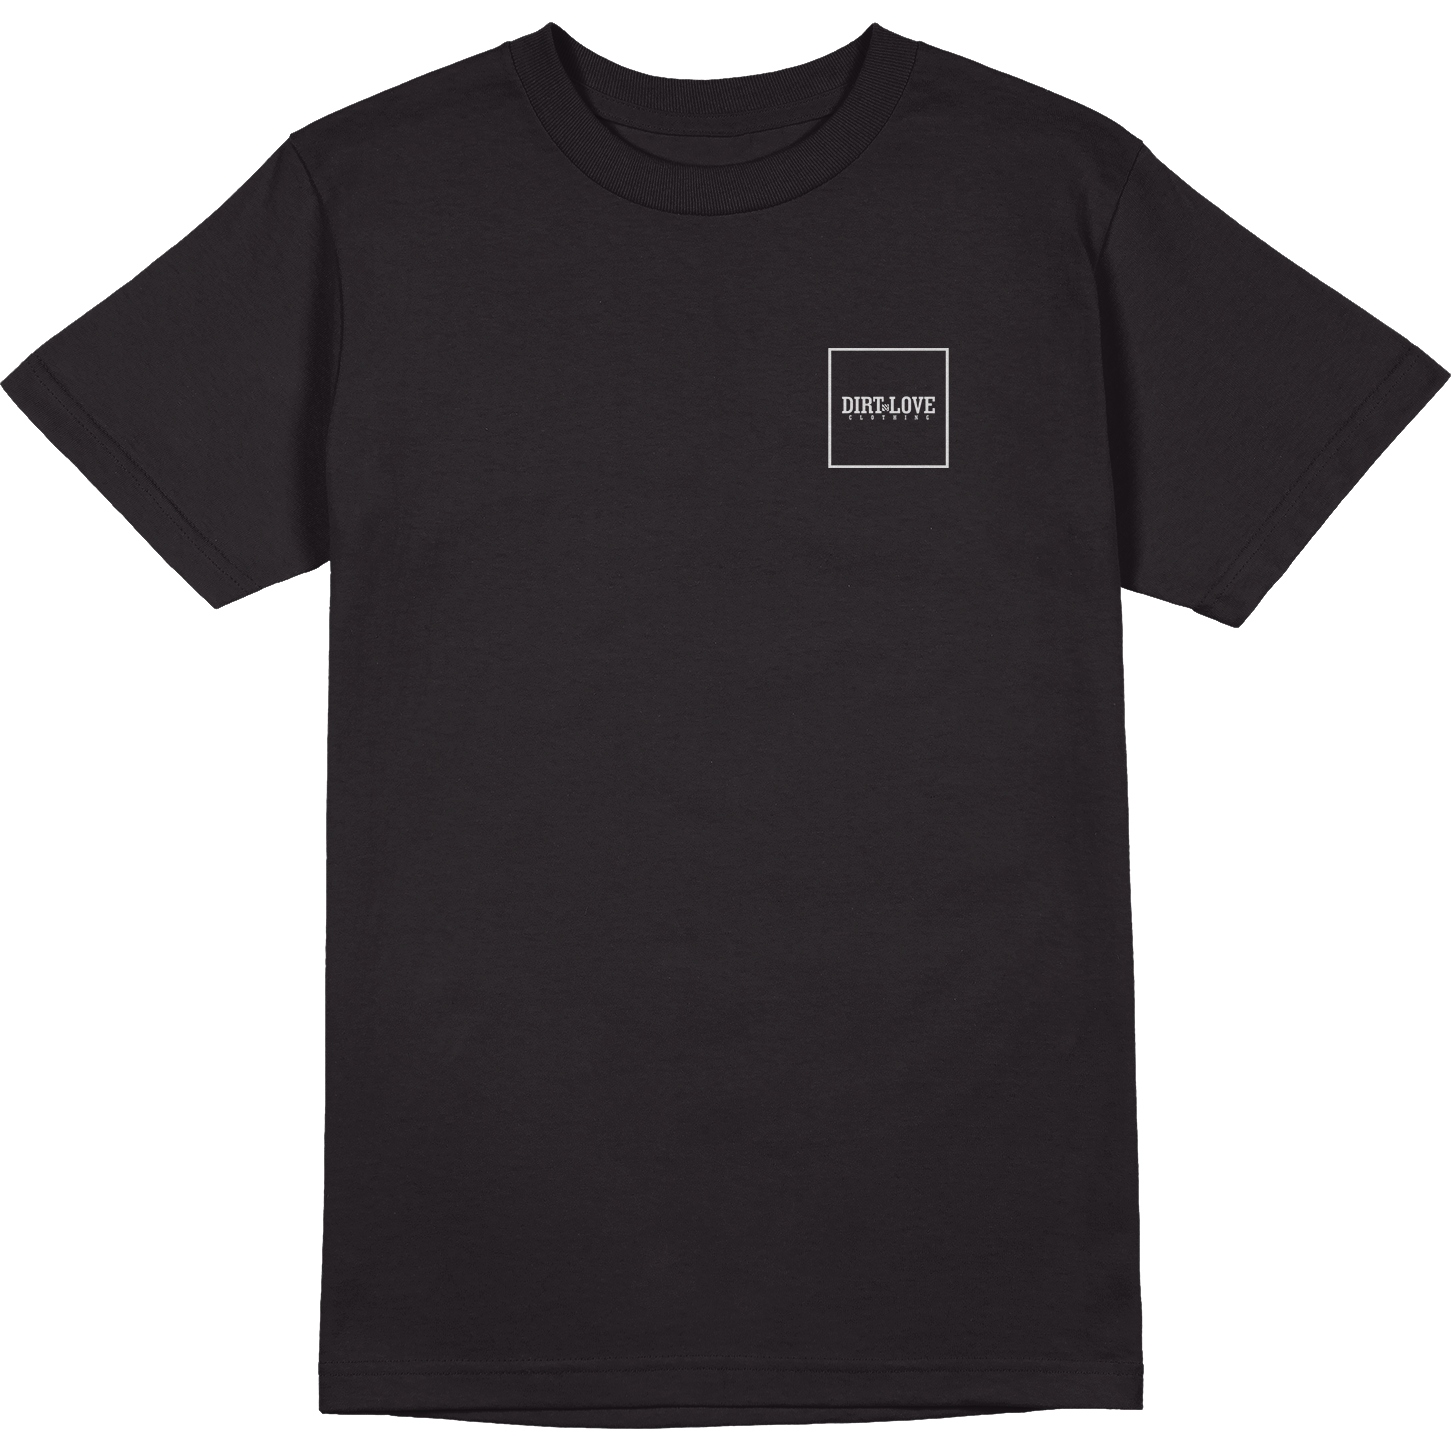 Bild von Dirt Love Box Logo Tee T-Shirt - schwarz